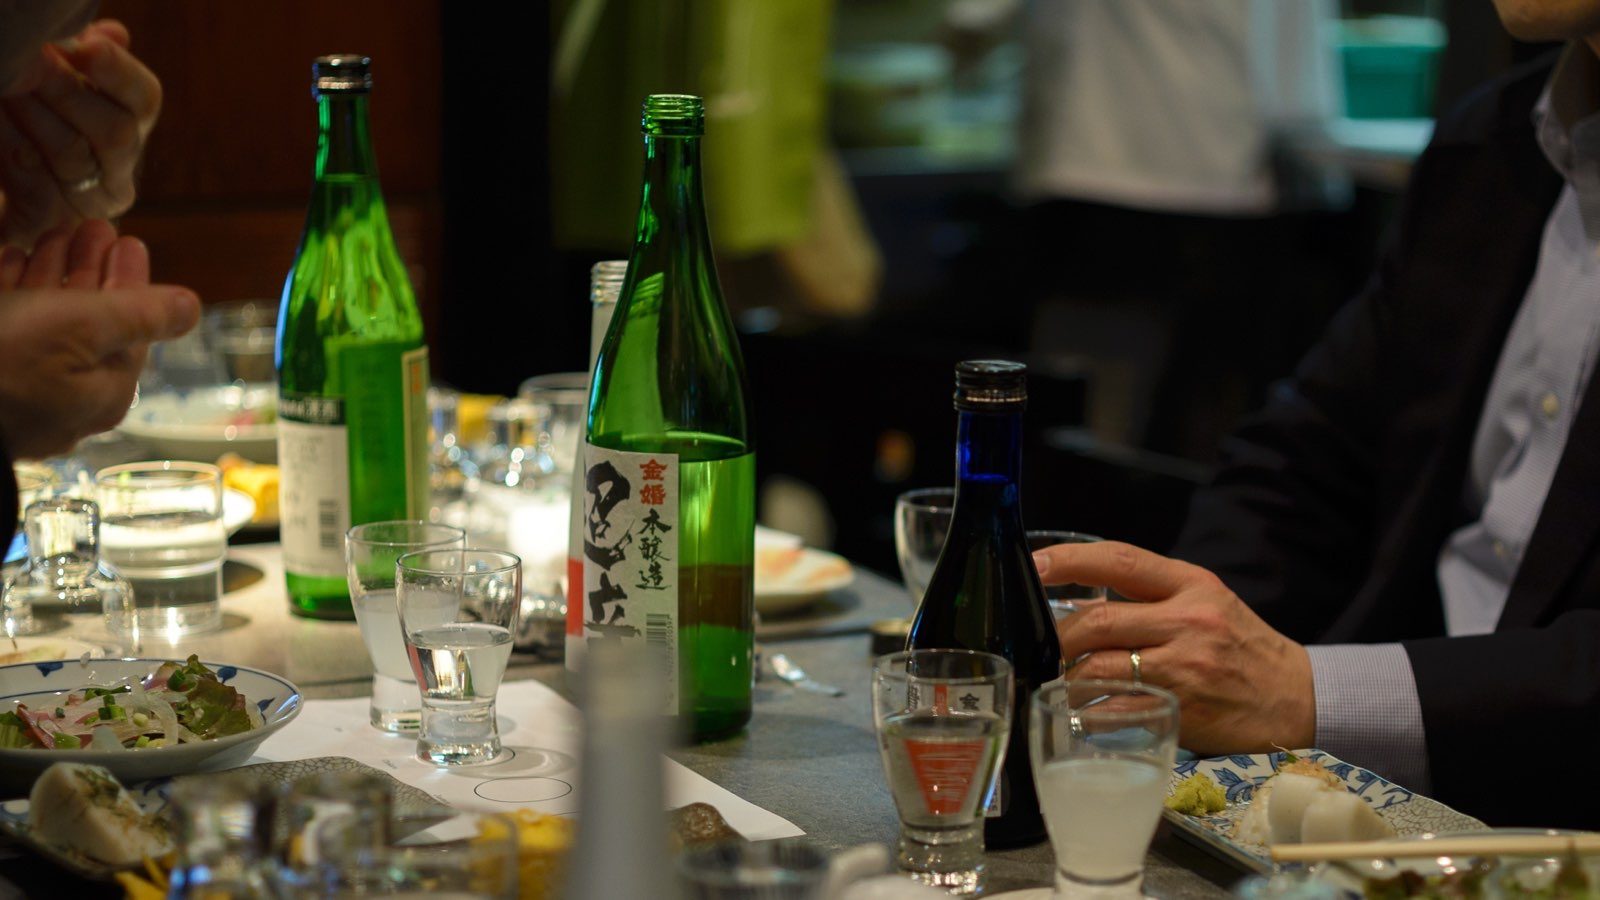 日本清酒中国白酒大米酒精米酿酒2.0.jpg